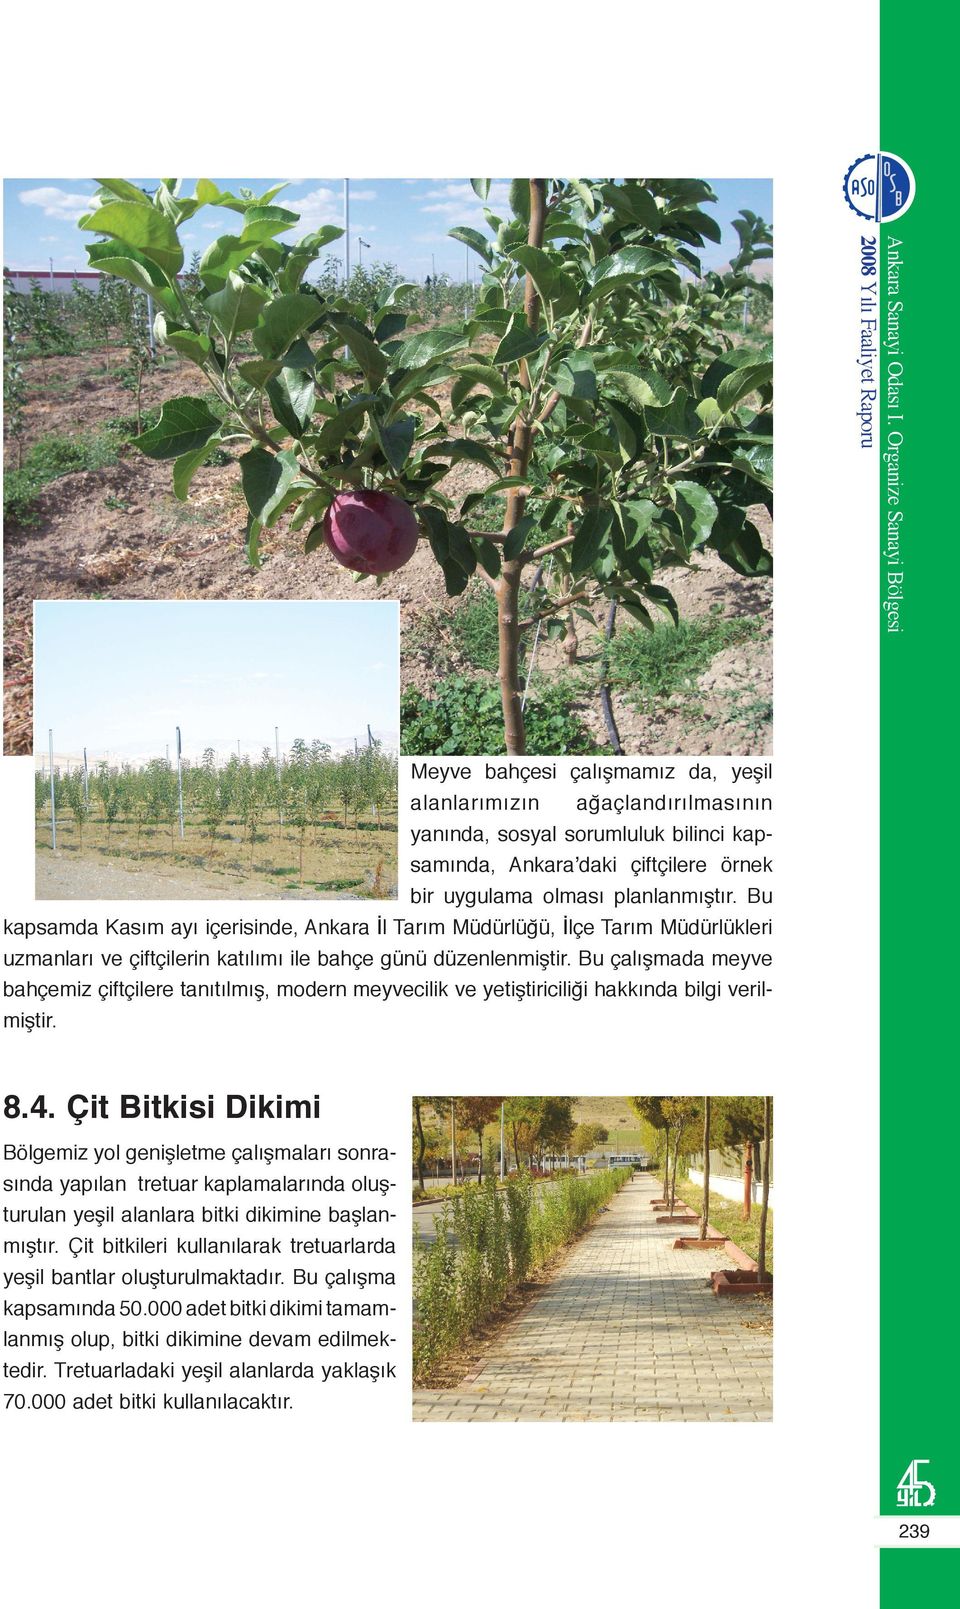 Bu çalışmada meyve bahçemiz çiftçilere tanıtılmış, modern meyvecilik ve yetiştiriciliği hakkında bilgi verilmiştir. 8.4.